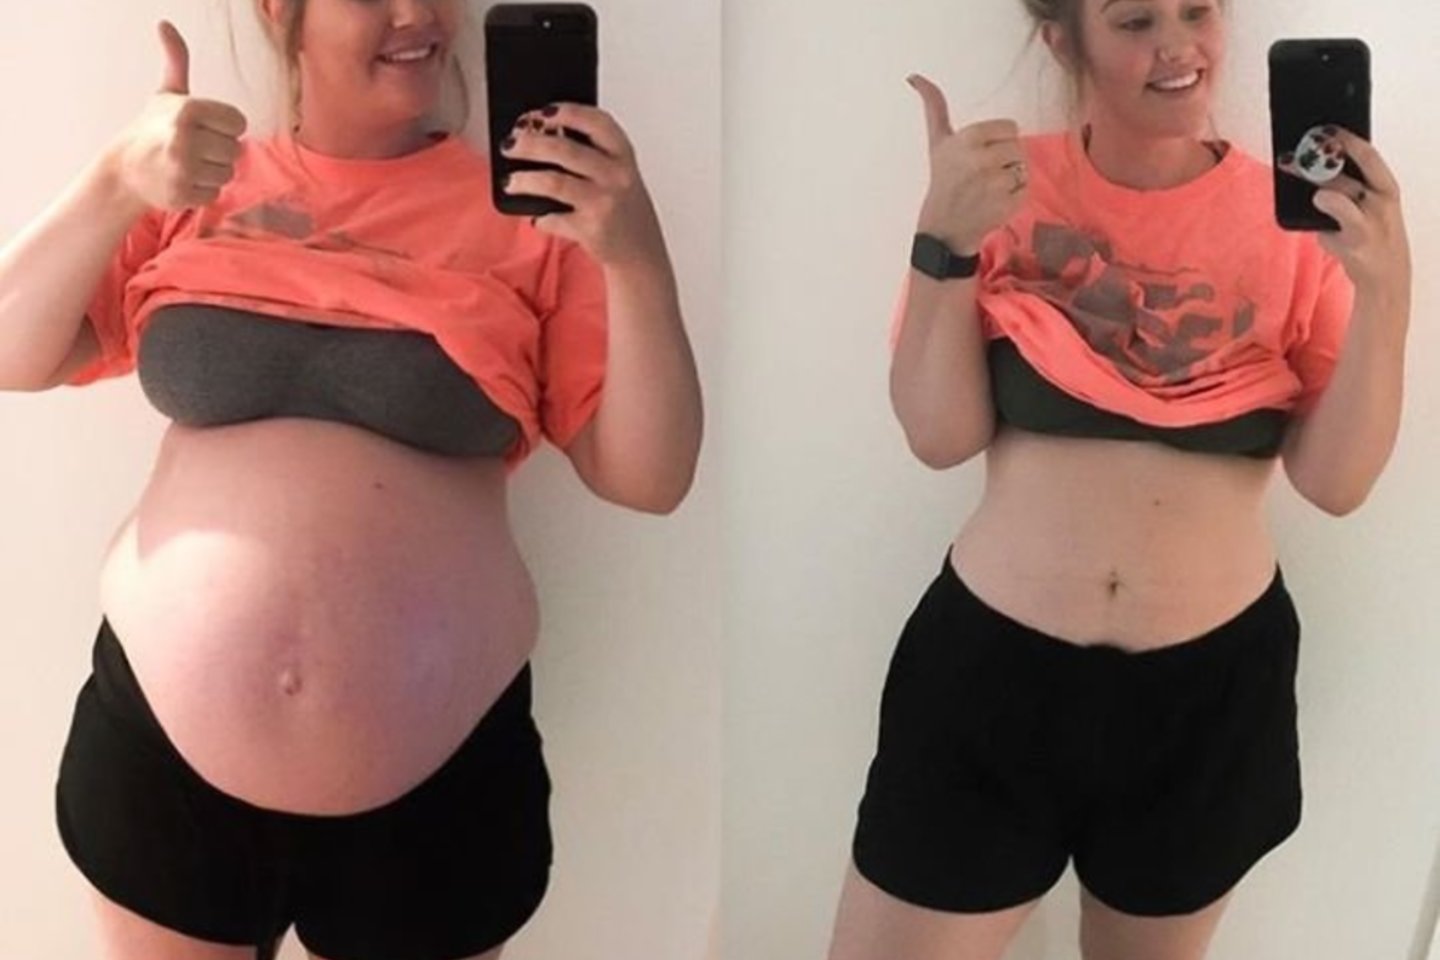  25 metų Kassidy Linde pasitikėjimas savimi krito, kai nėštumo metu ji svėrė beveik 118 kg. <br> Instagram nuotr.